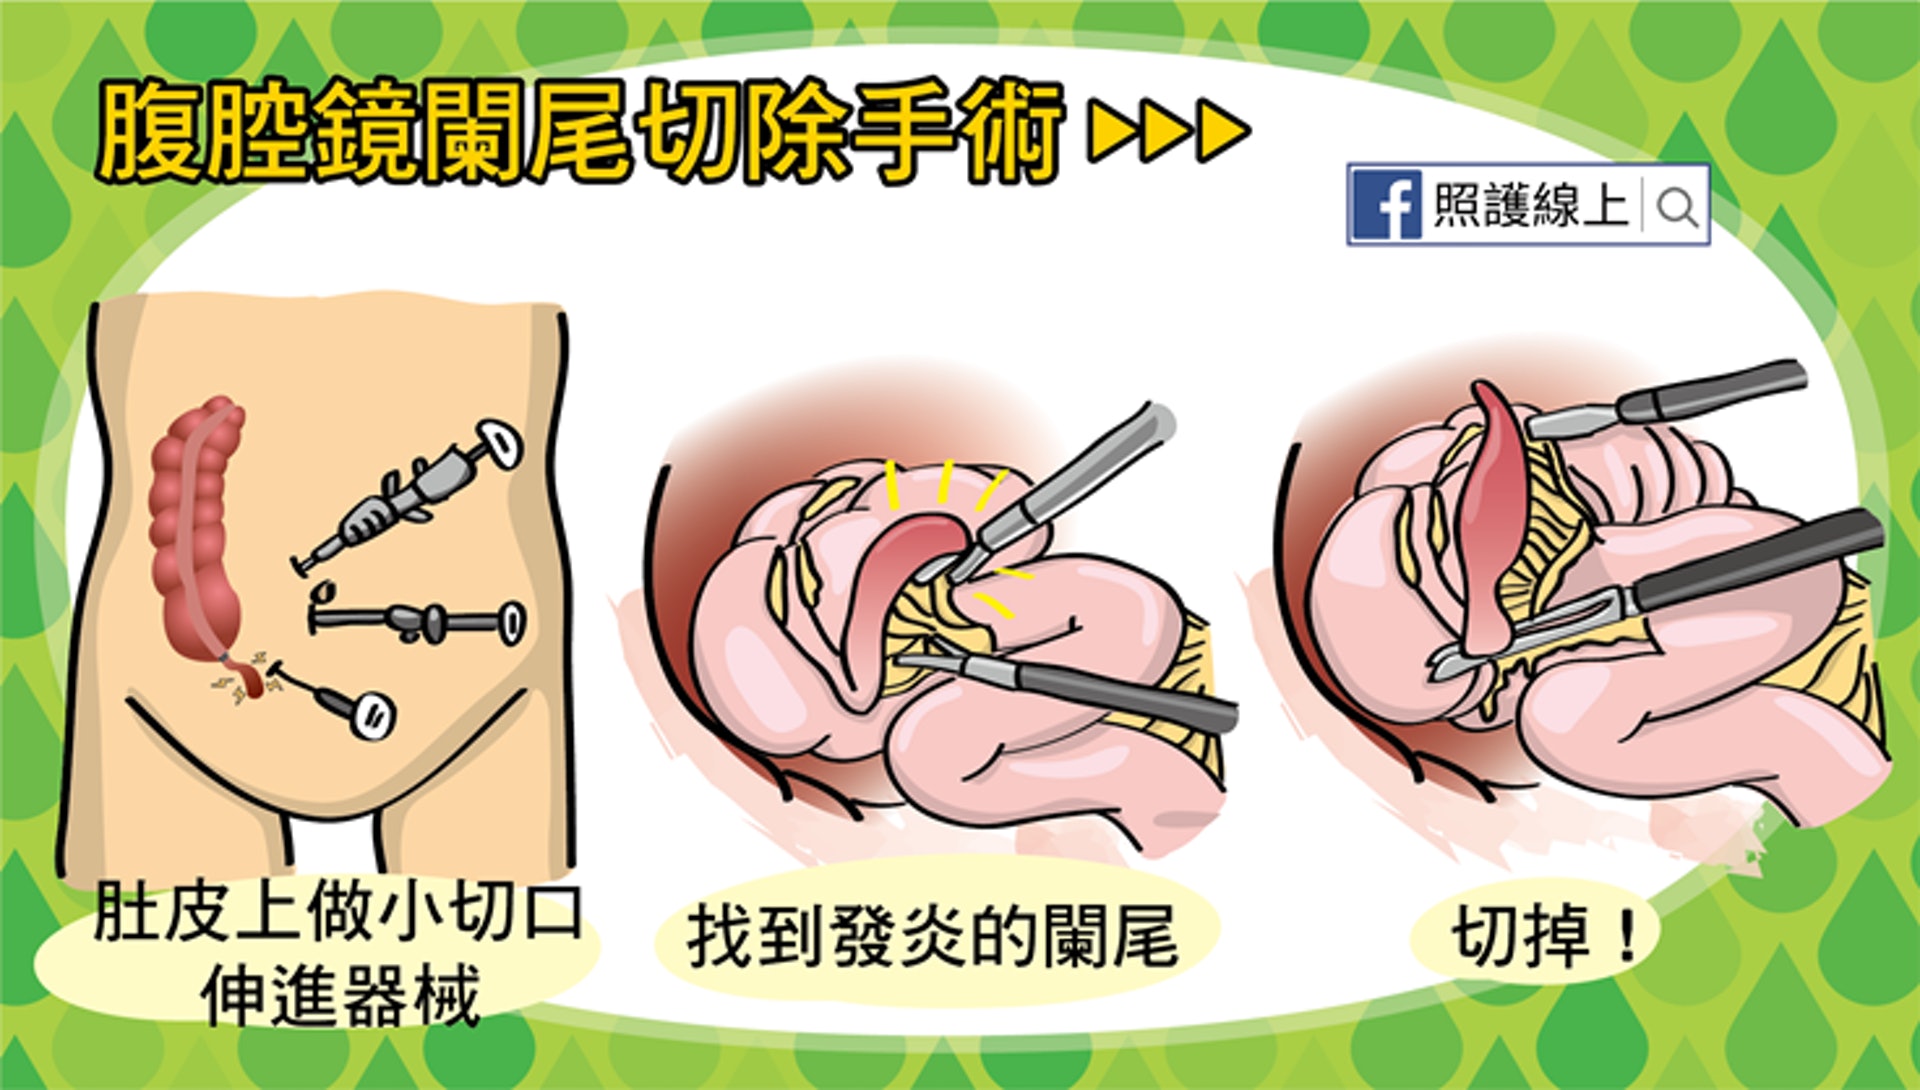 現在腹腔鏡闌尾切除手術也是很常見的（照護線上授權使用）